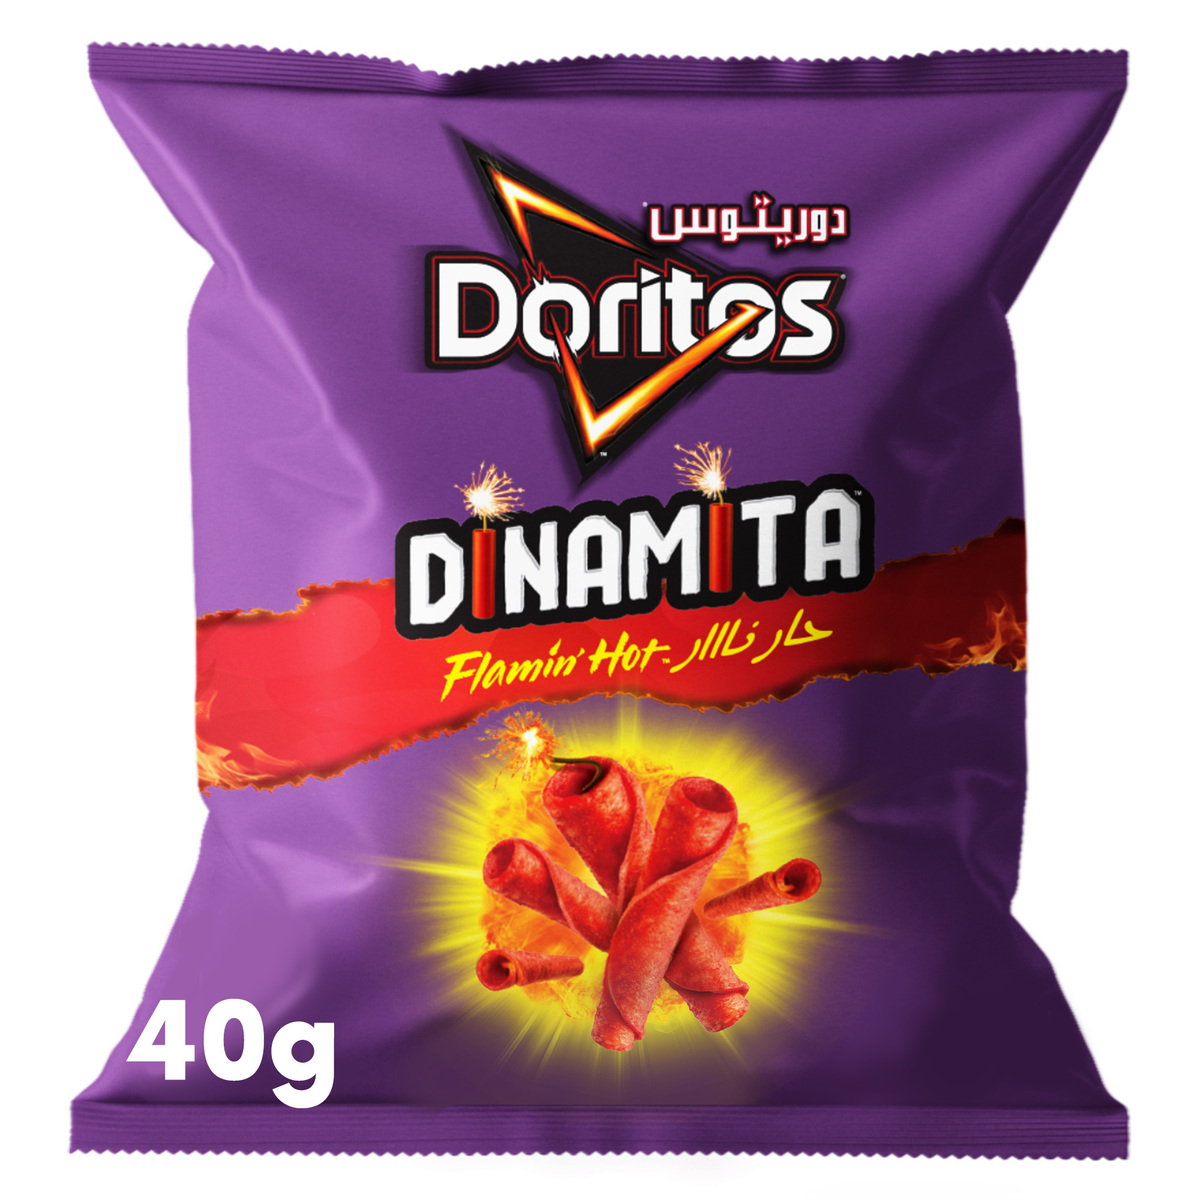 Doritos Dinamita Flamin' Hot Flavored Tortilla Chips, 40g